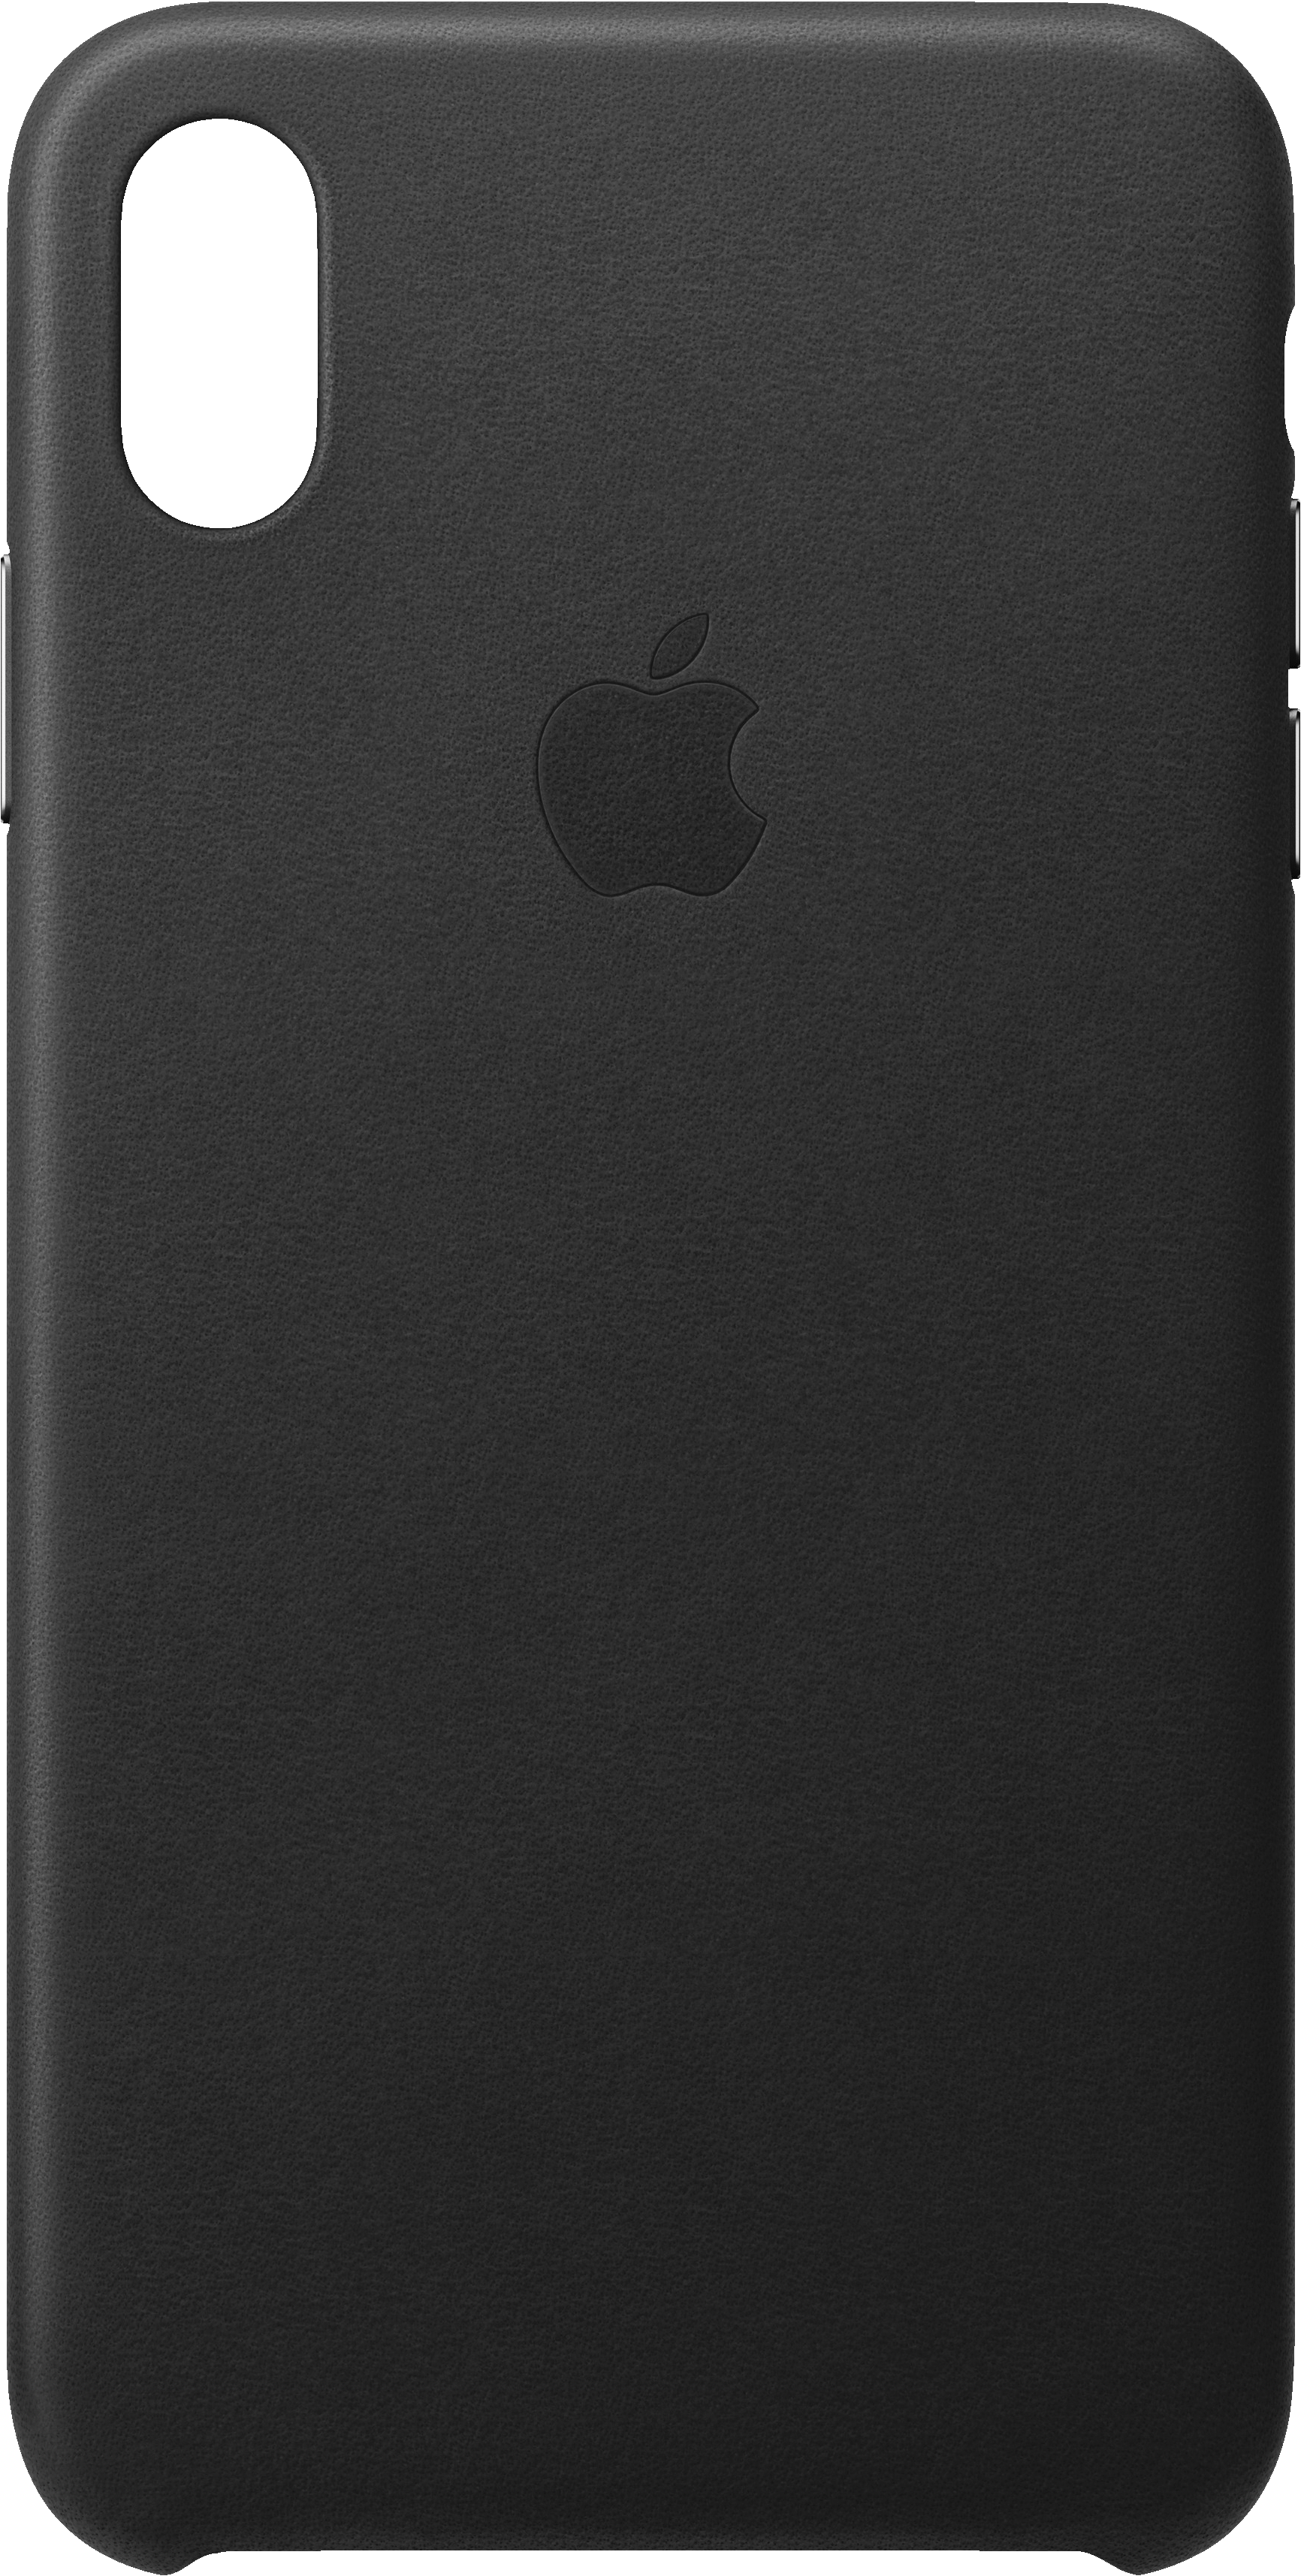 iPhone Xs Max skinndeksel (sort) - Deksler og etui til mobiltelefon - Elkjøp